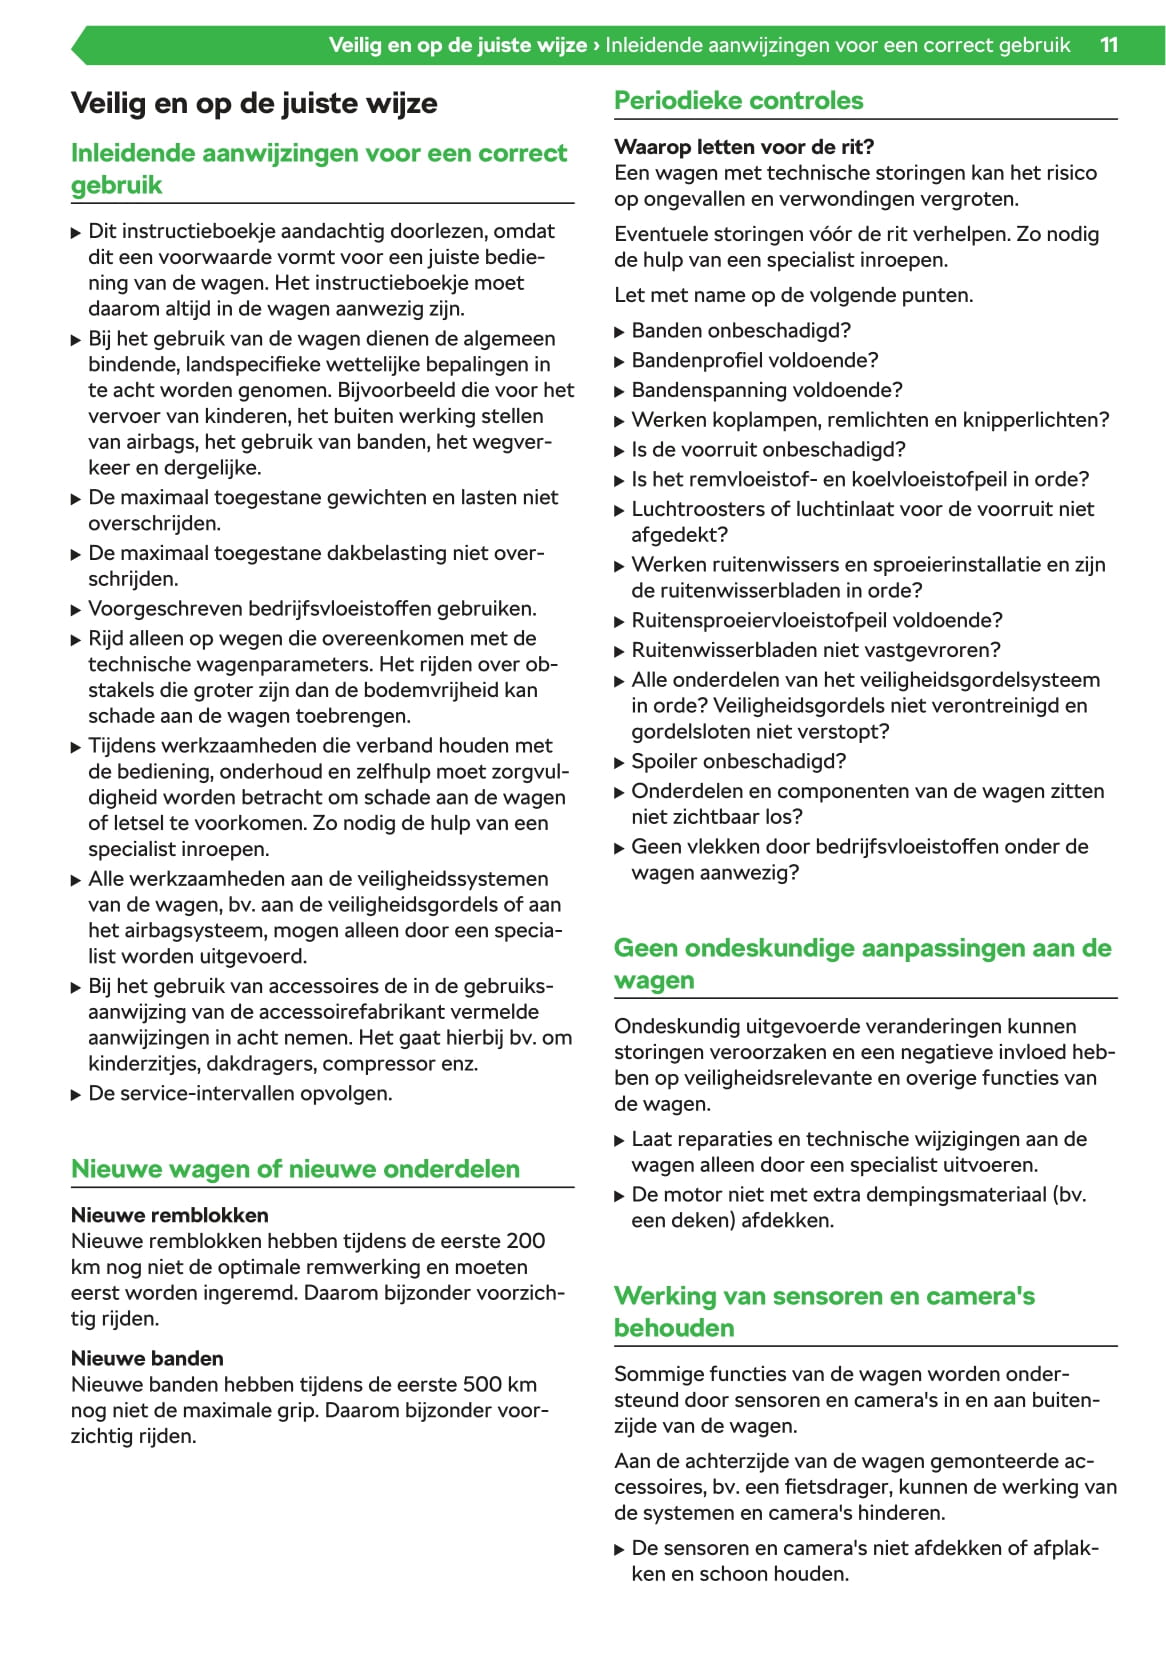 2019-2020 Skoda Citigo-e iV Gebruikershandleiding | Nederlands